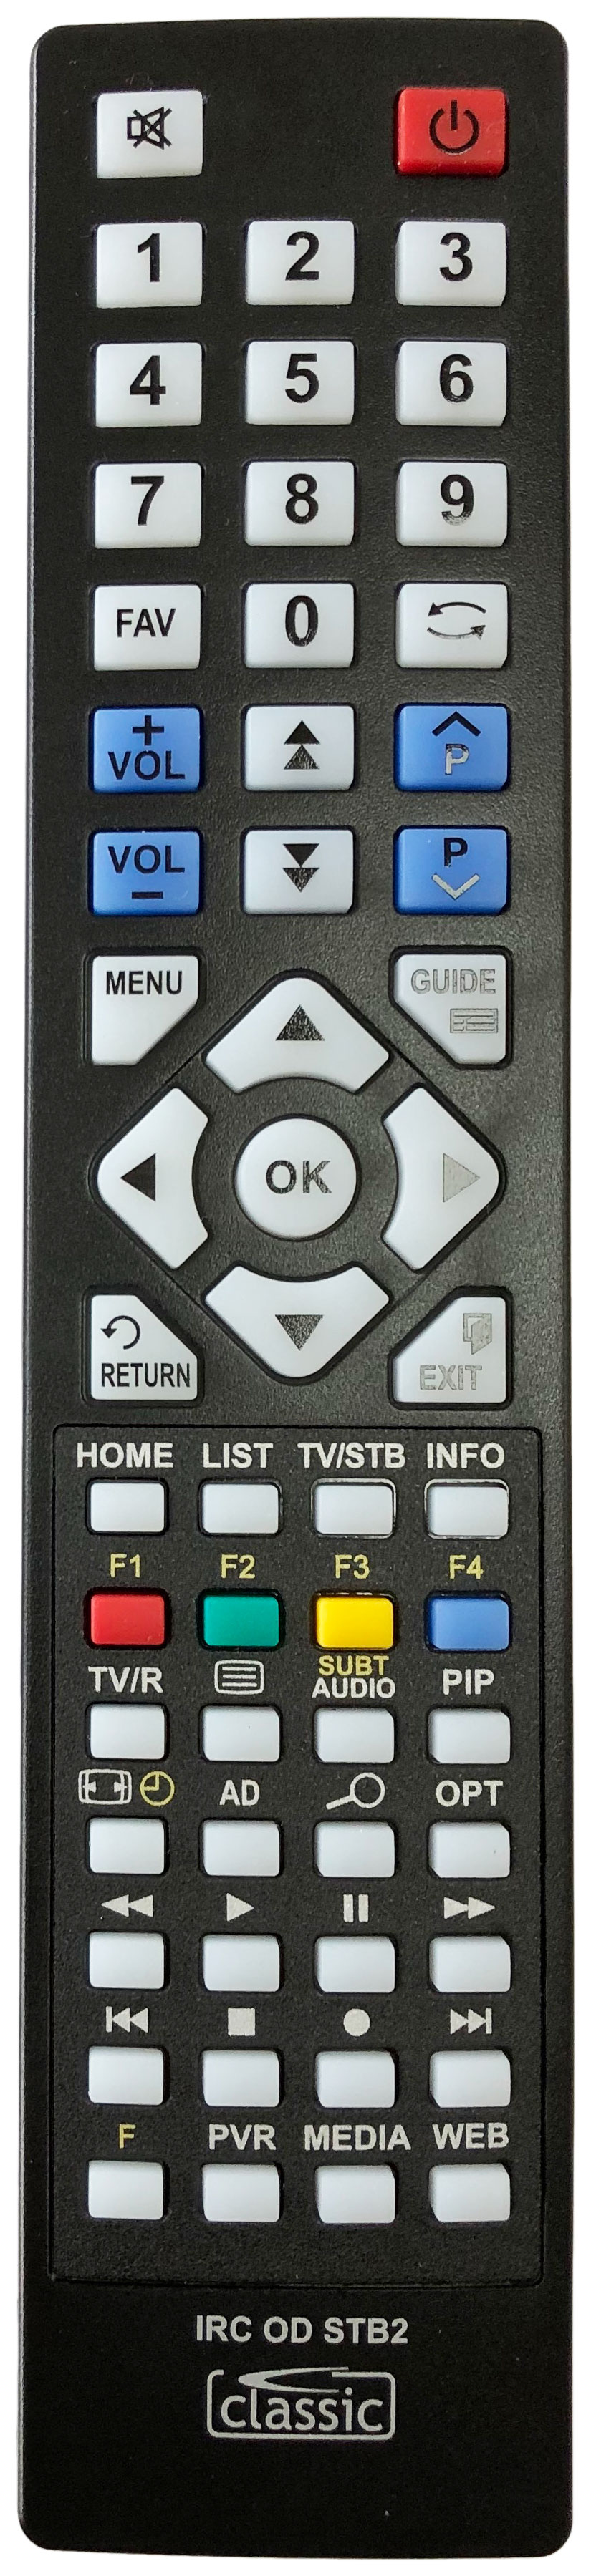 GRUNDIG 1600TS1G Remote Control